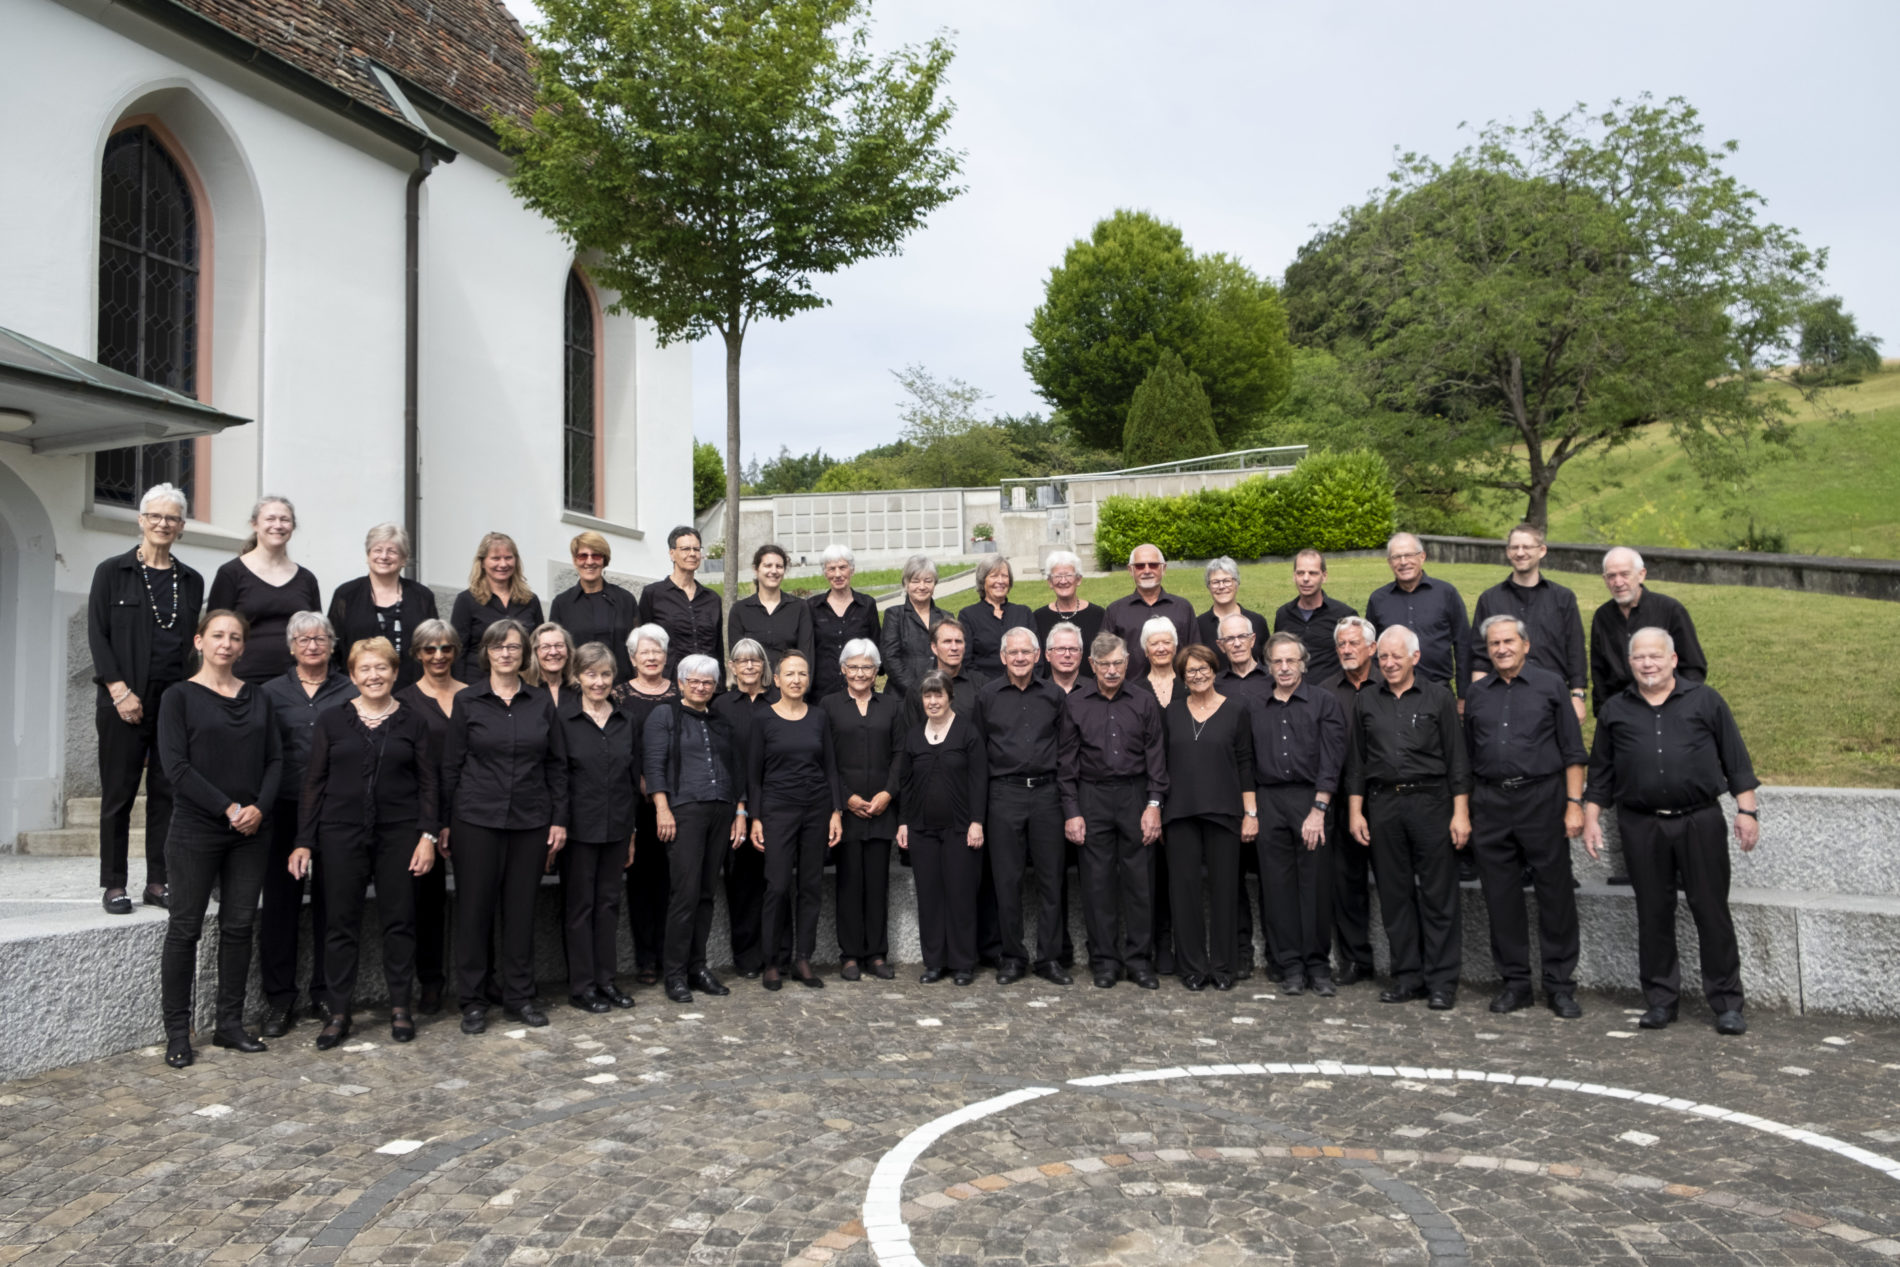 Sängerinnen und Sänger des Gesangvereins Hedingen posieren nach dem Renaissancekonzert 2018 auf dem runden Platz vor der Kirche Hedingen